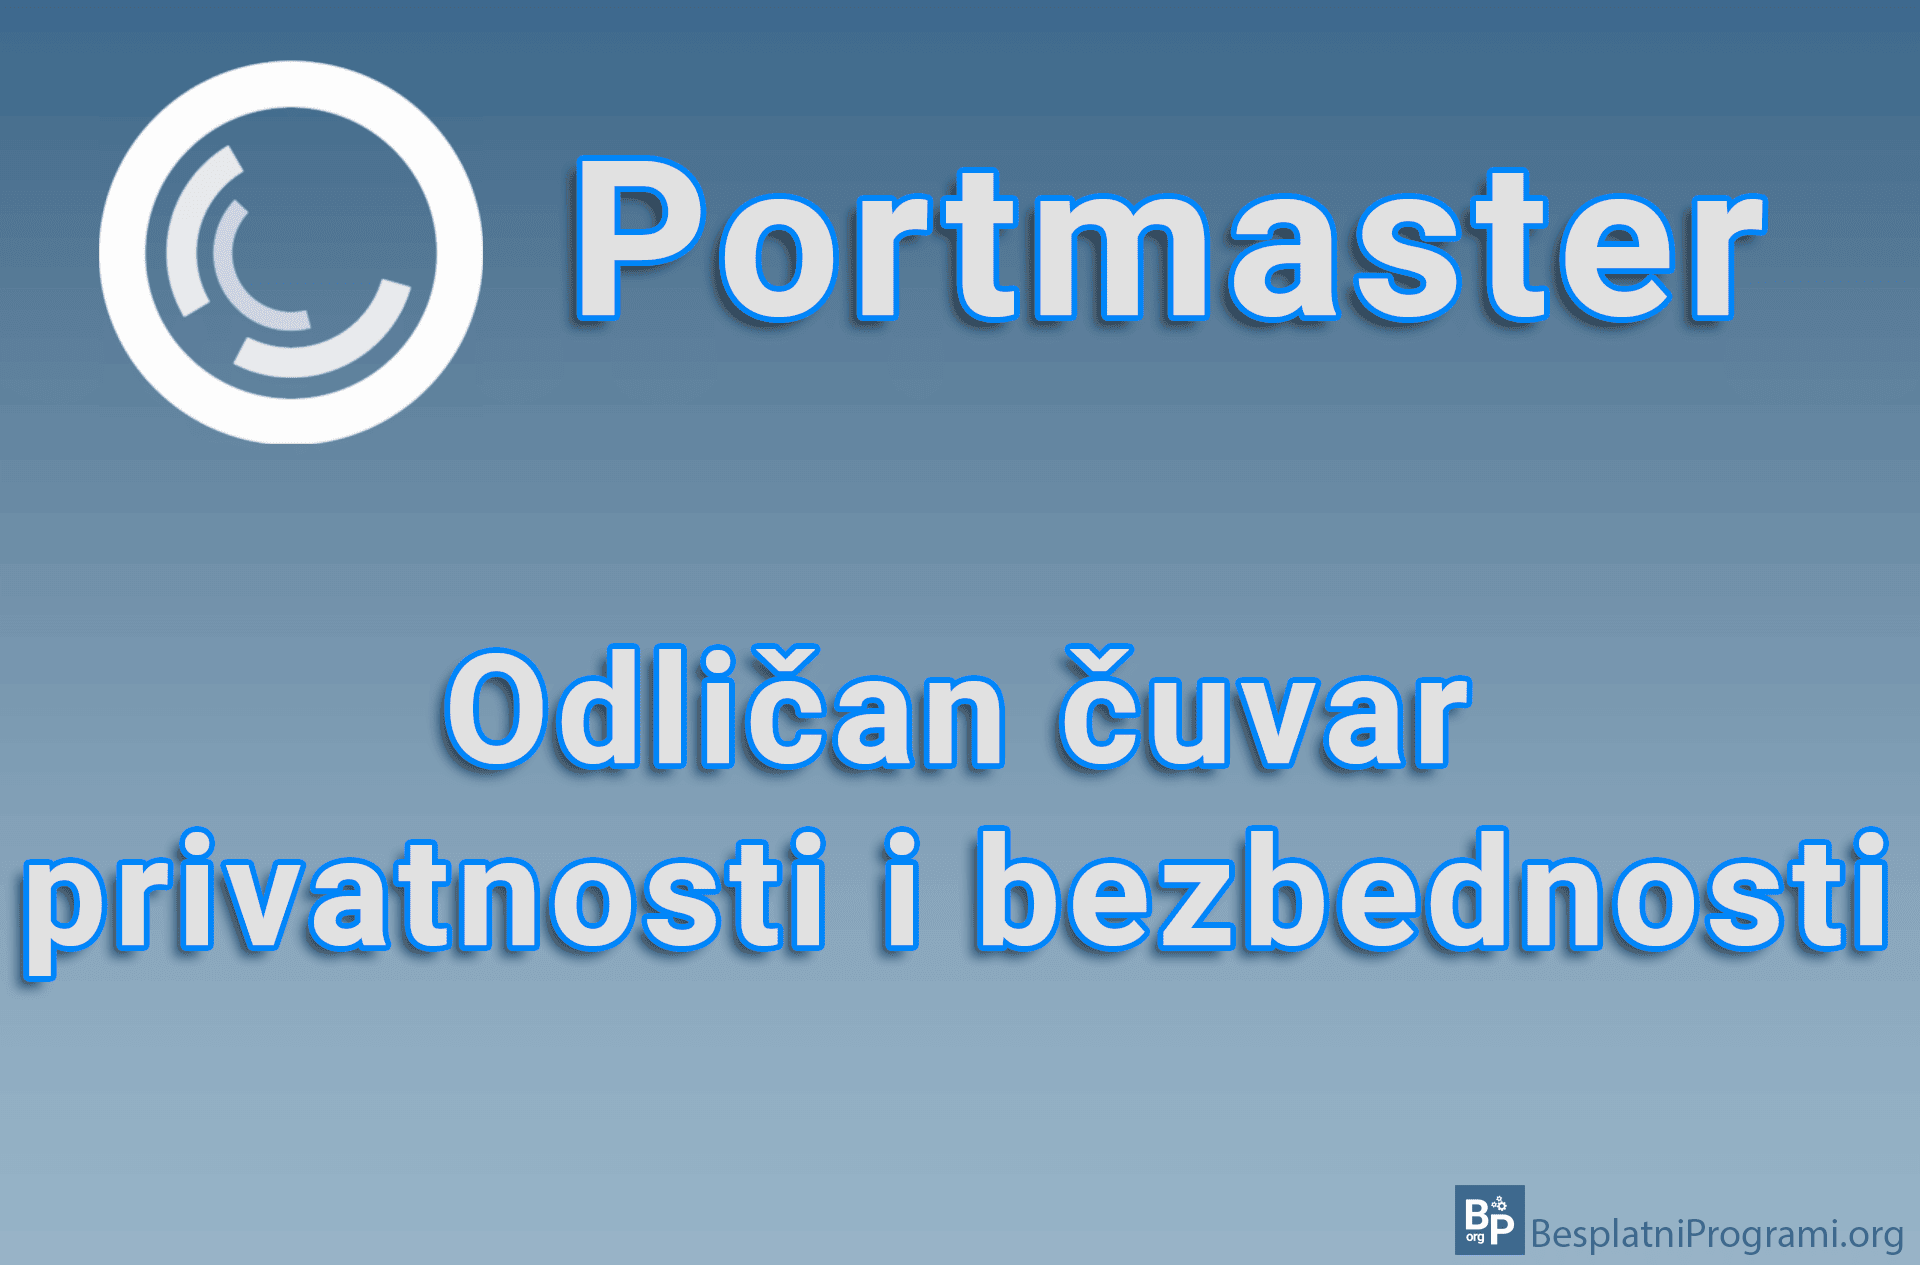 Portmaster - Odličan čuvar privatnosti i bezbednosti